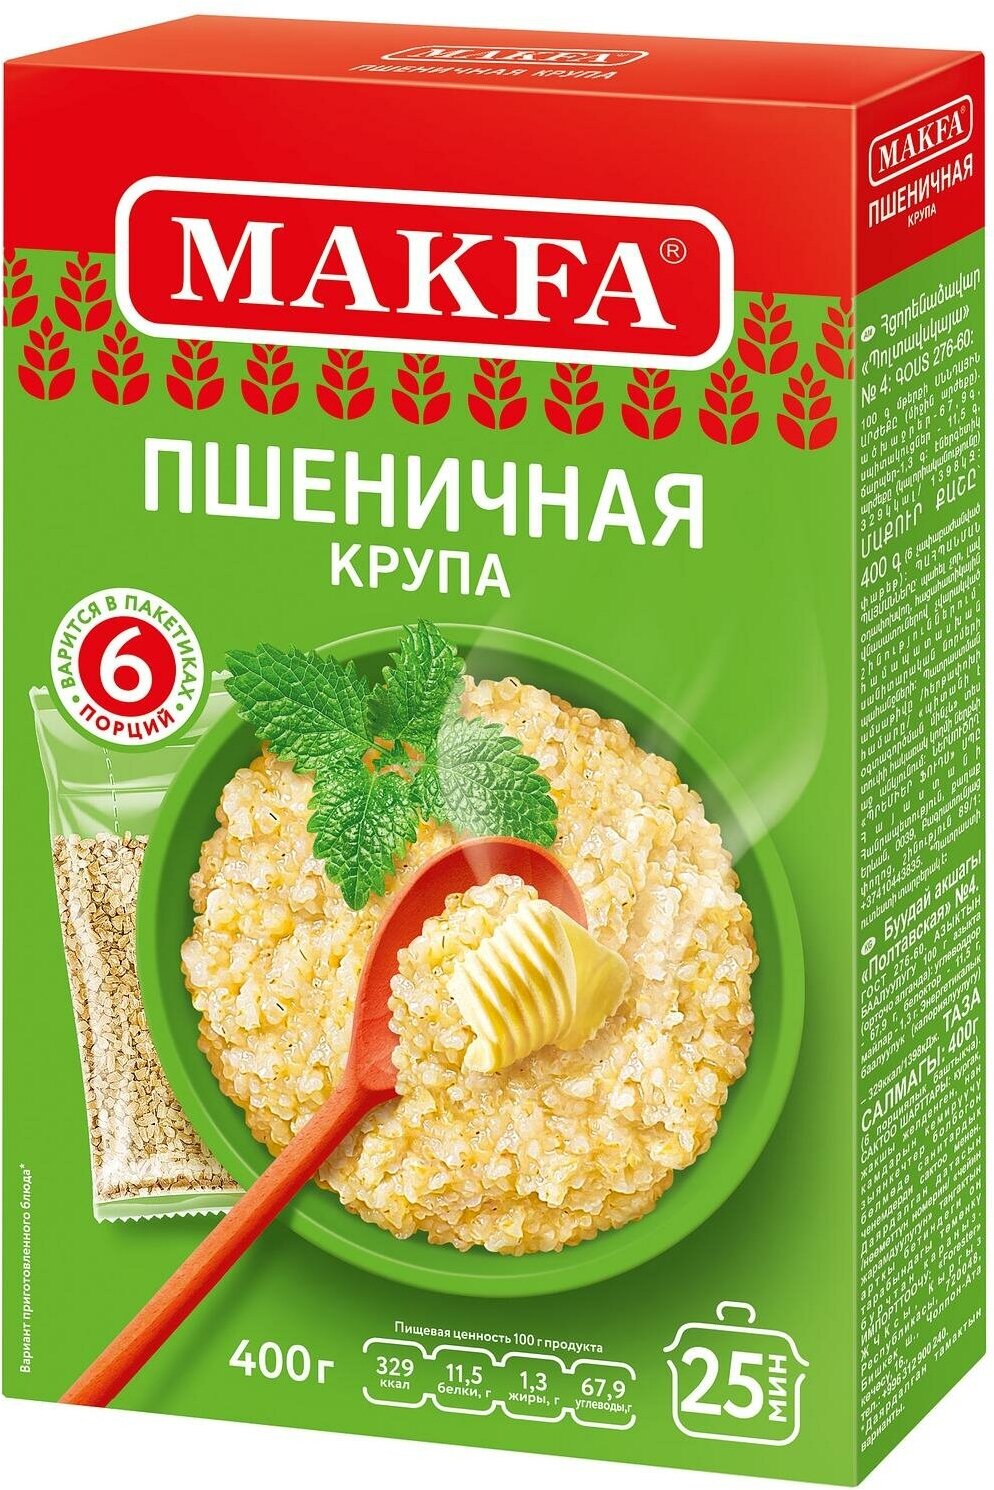 Пшеничная крупа Макфа "Полтавская" №4 400г, 6 пакетиков х 66,5